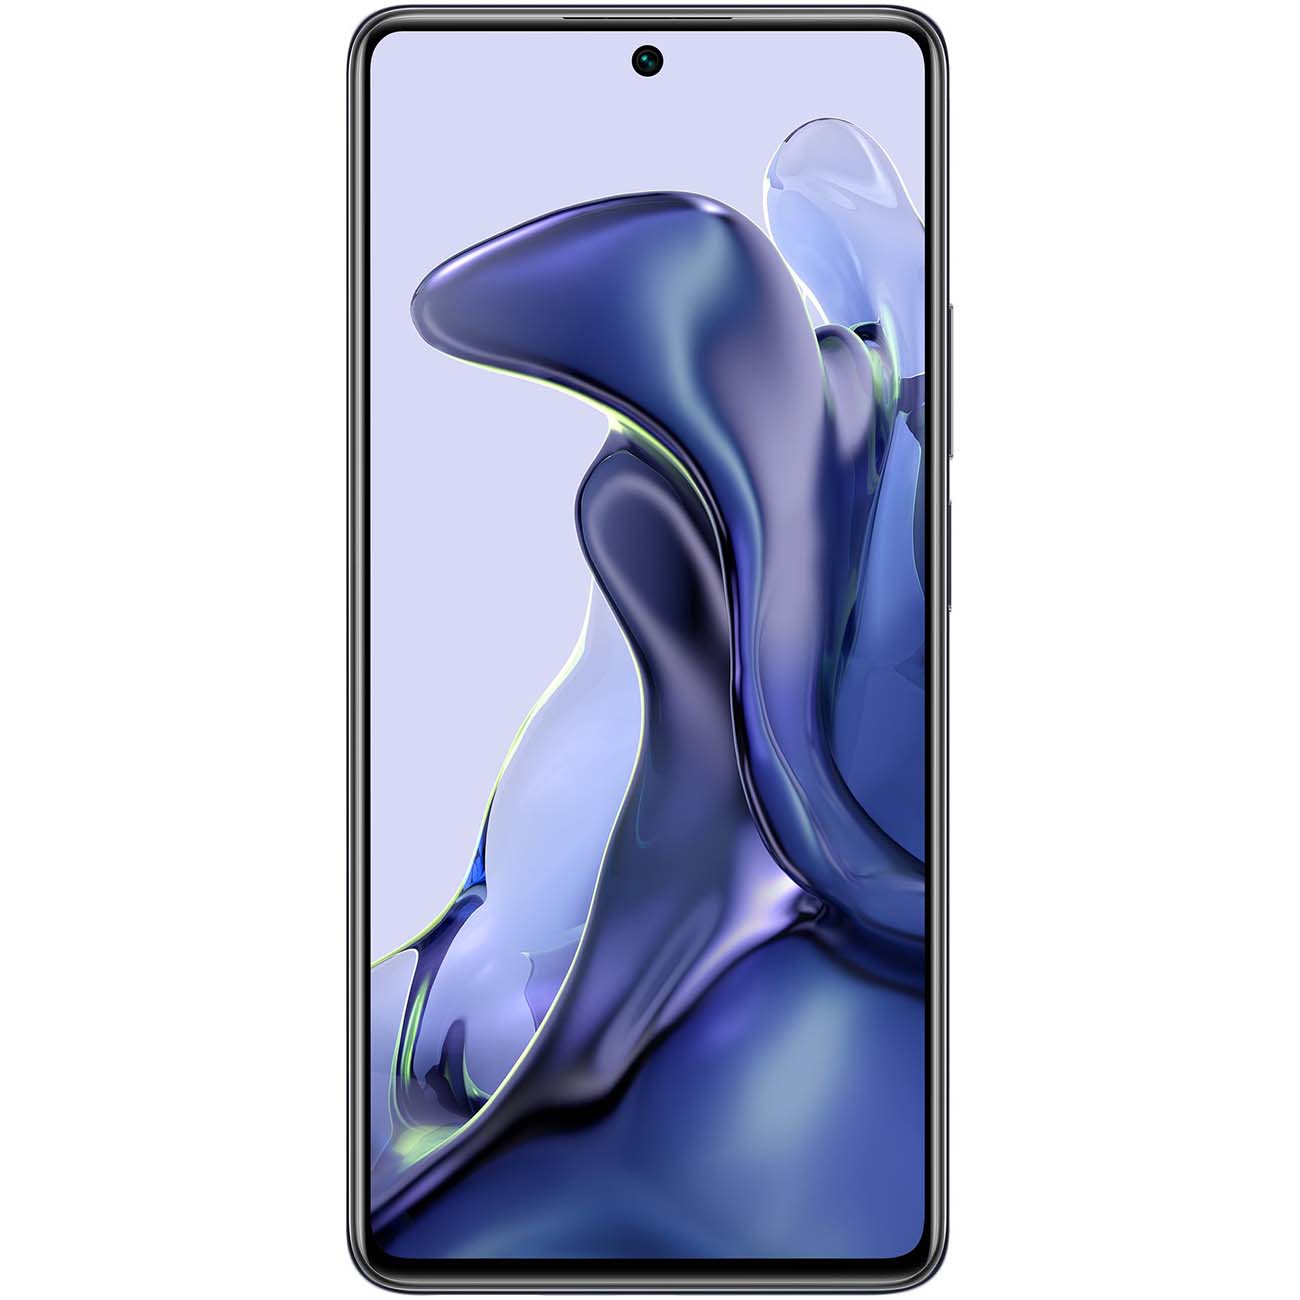 Купить смартфон xiaomi 11t 8gb+256gb gray Смартфоны в официальном магазине Apple, Samsung, Xiaomi. iPixel.ru Купить, заказ, кредит, рассрочка, отзывы,  характеристики, цена,  фотографии, в подарок.